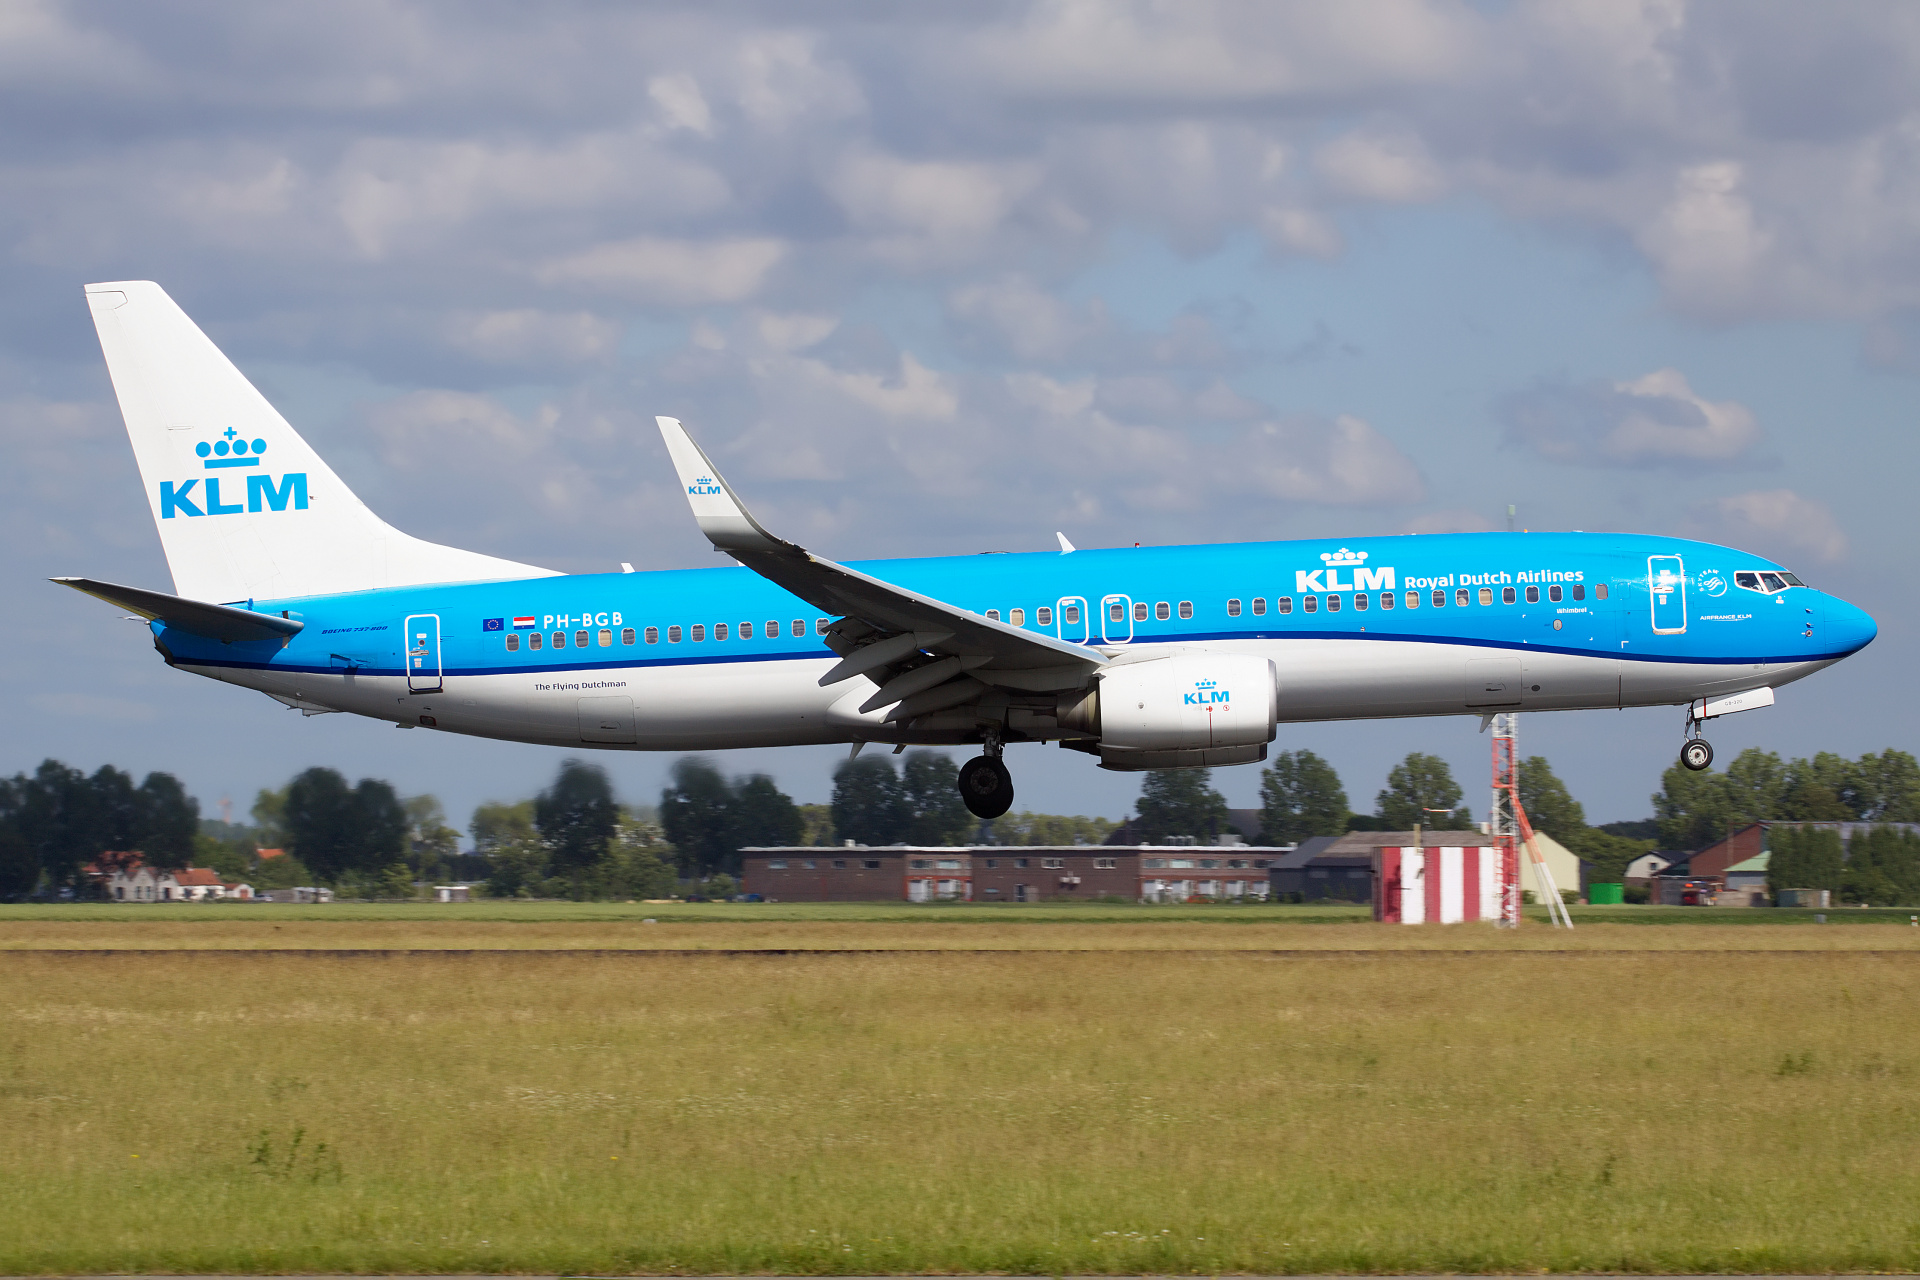 PH-BGB (Samoloty » Spotting na Schiphol » Boeing 737-800 » KLM Royal Dutch Airlines)